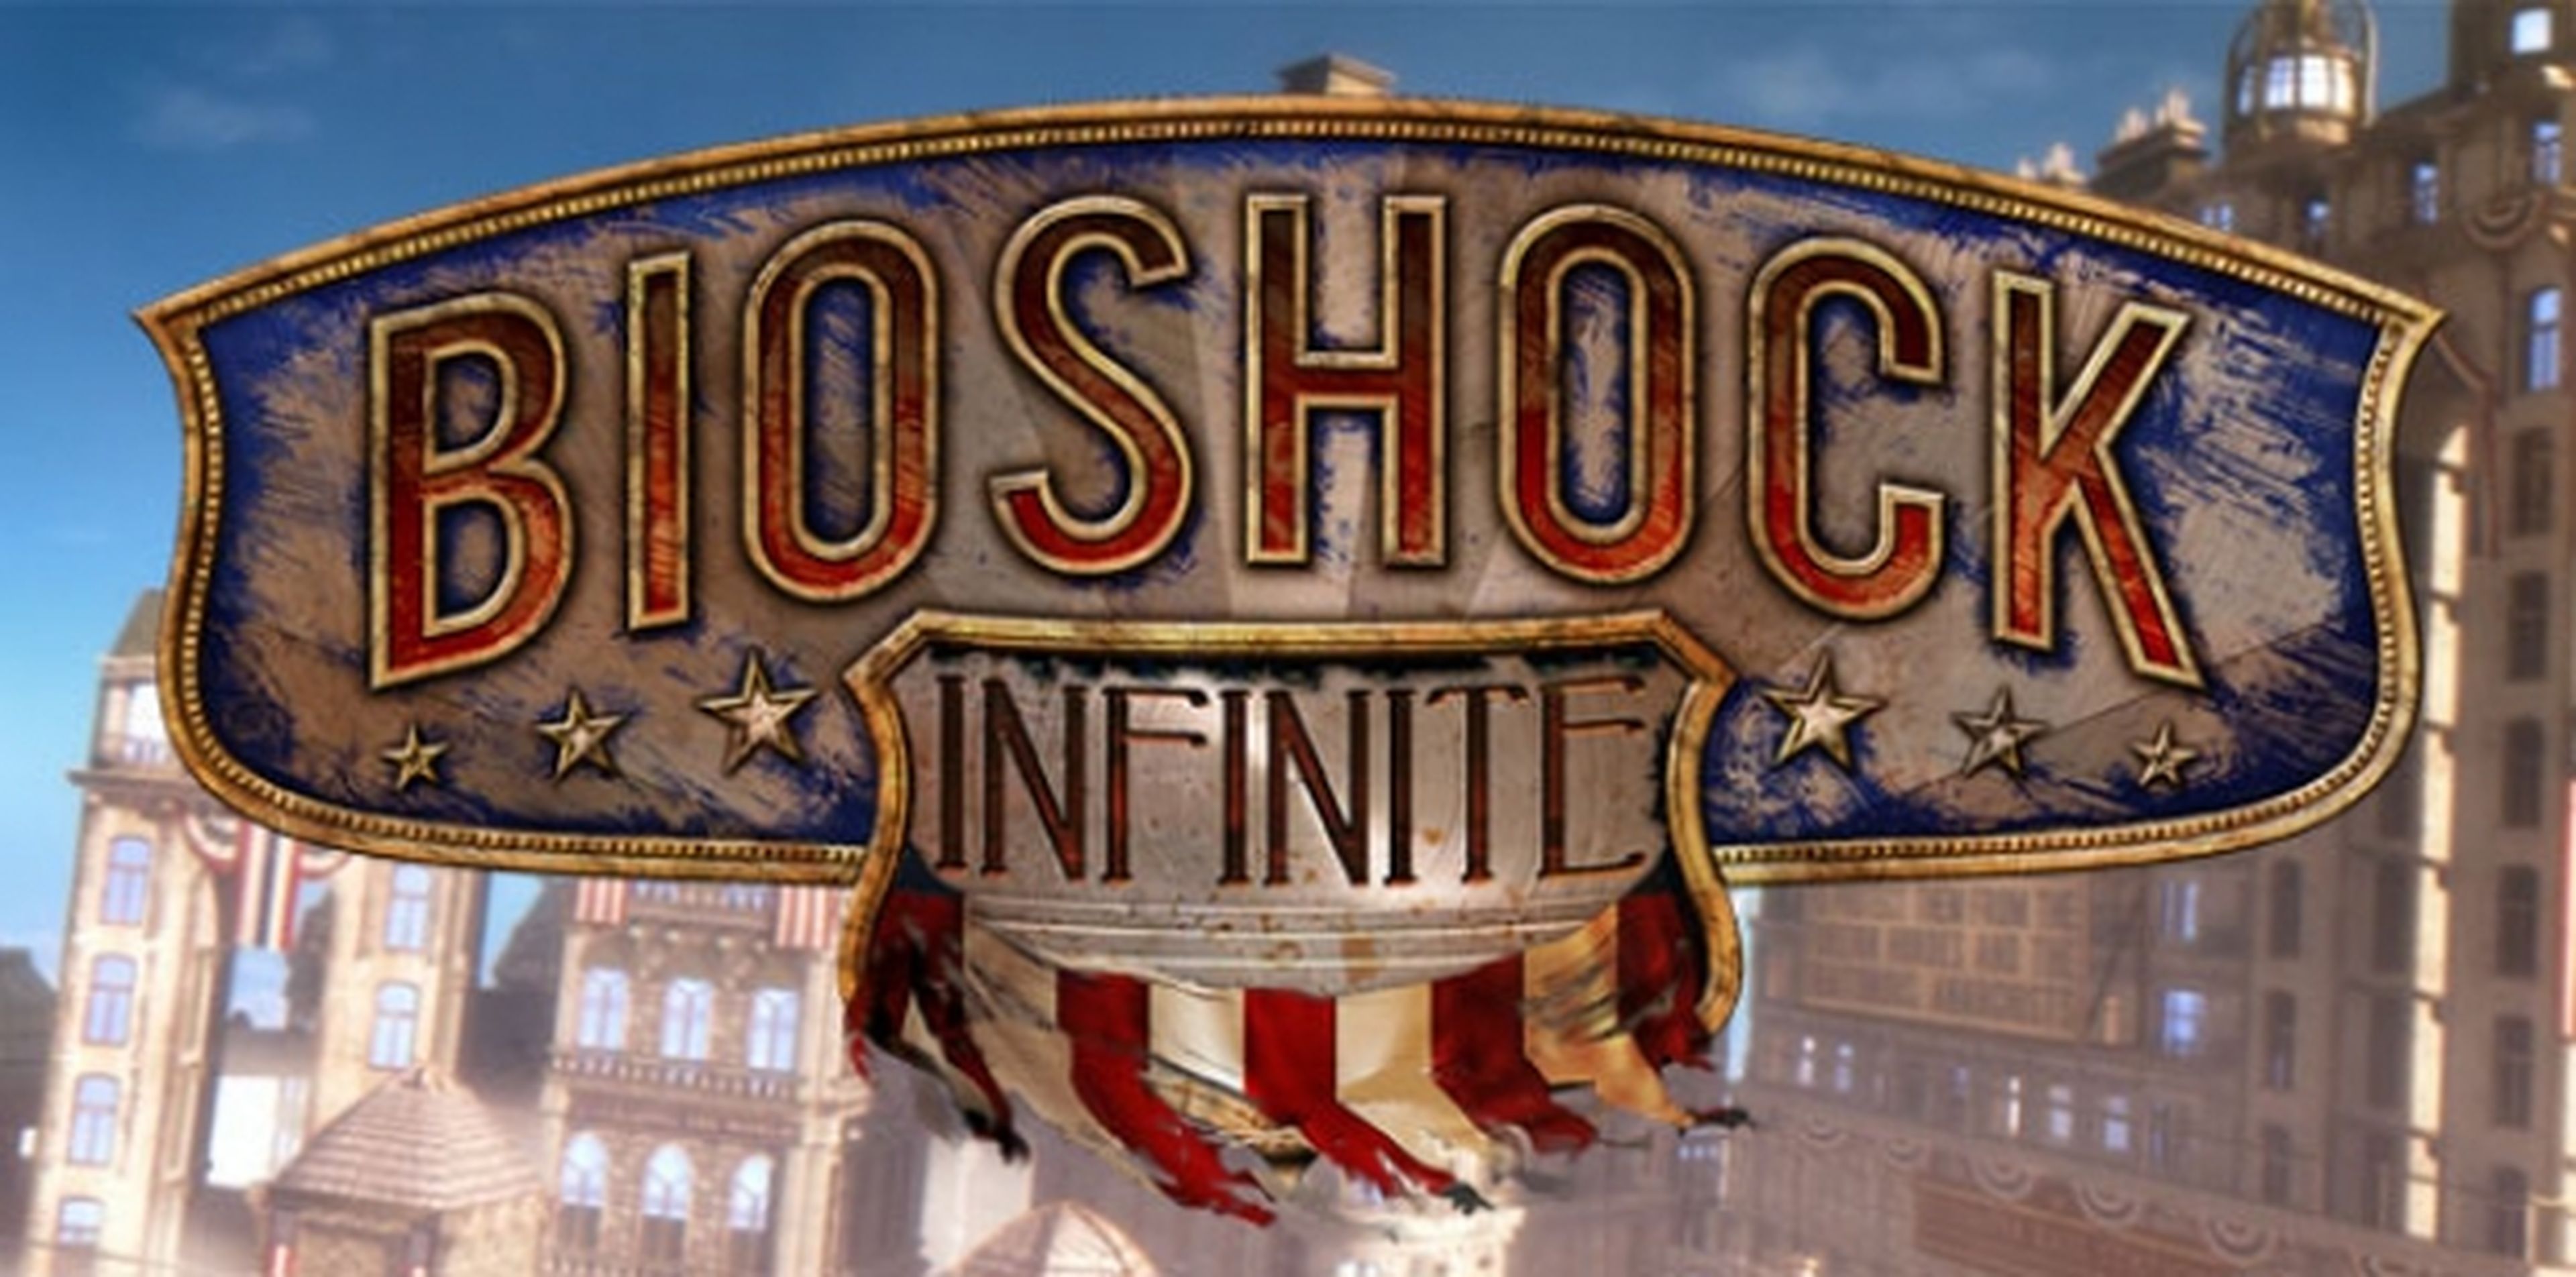 El logo de Bioshock Infinite plagiado por la cadena Fox